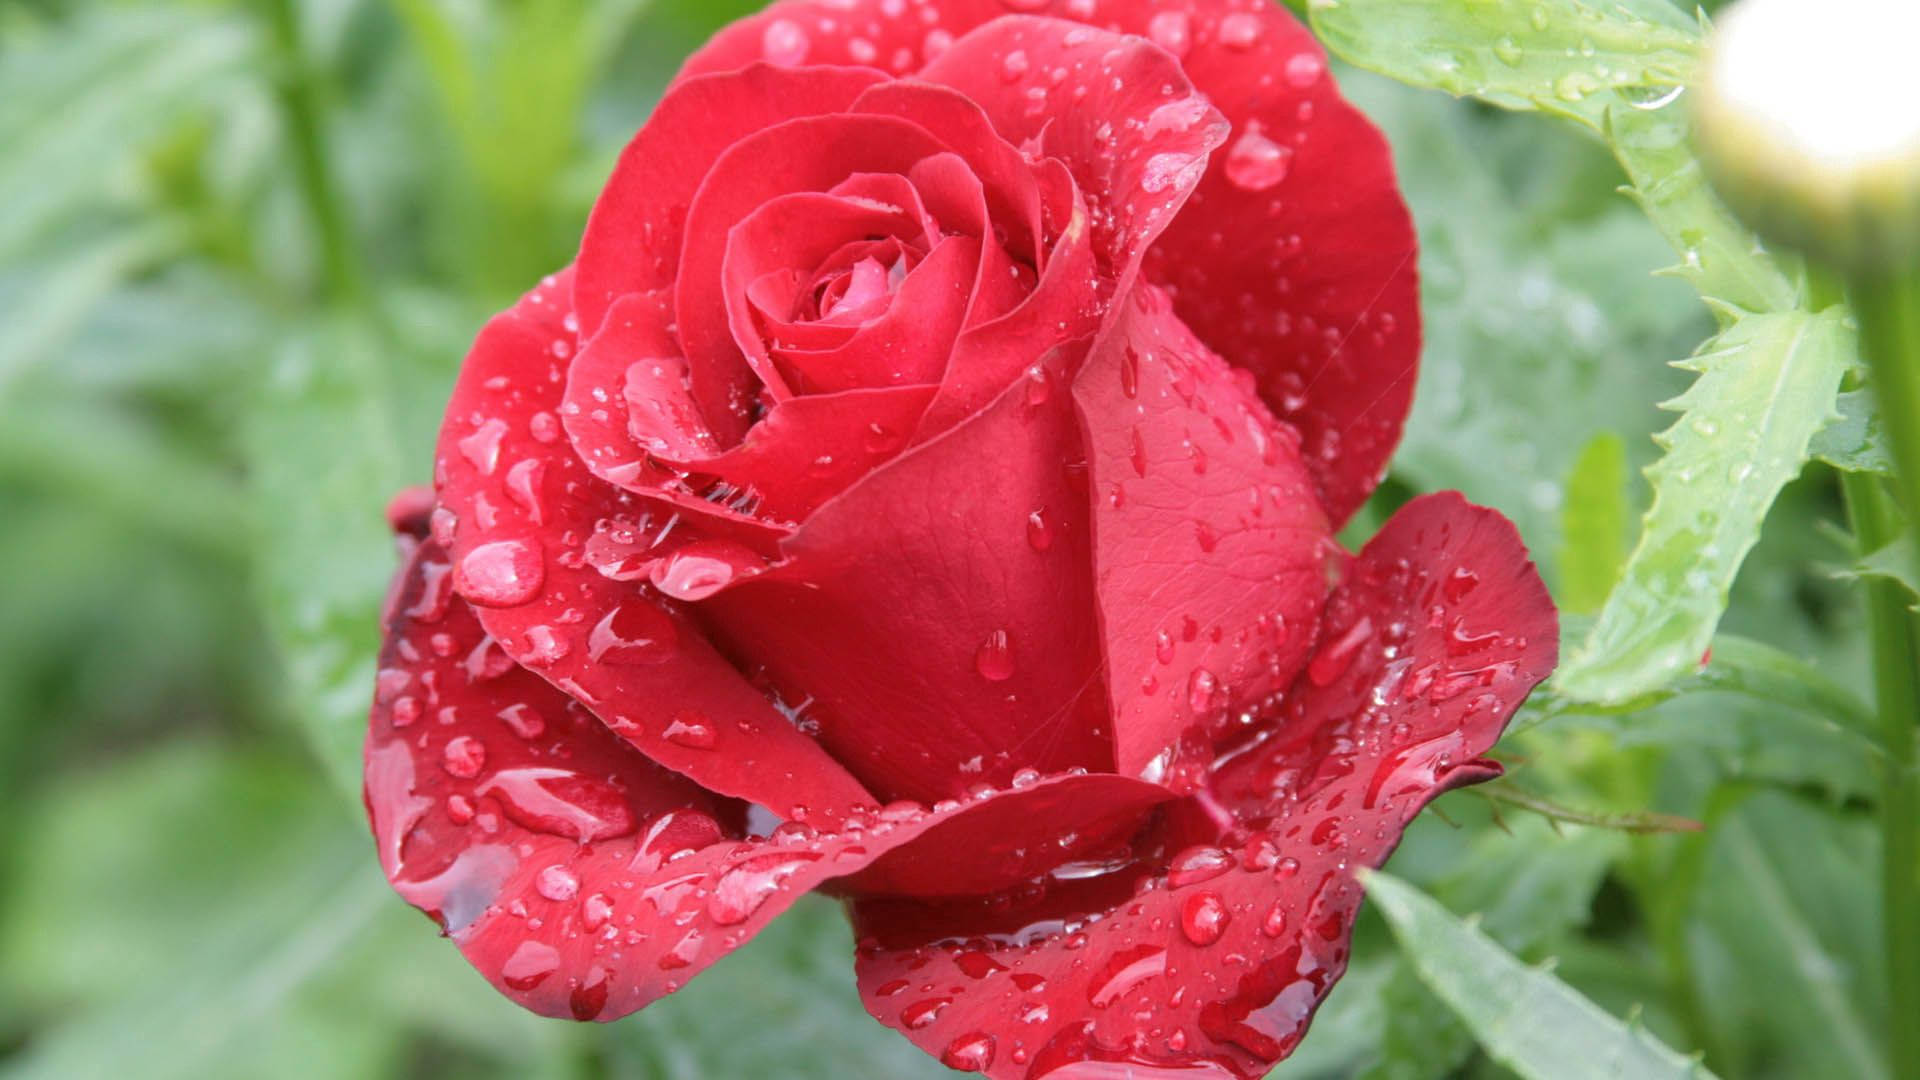 Rose, Petals, Drops